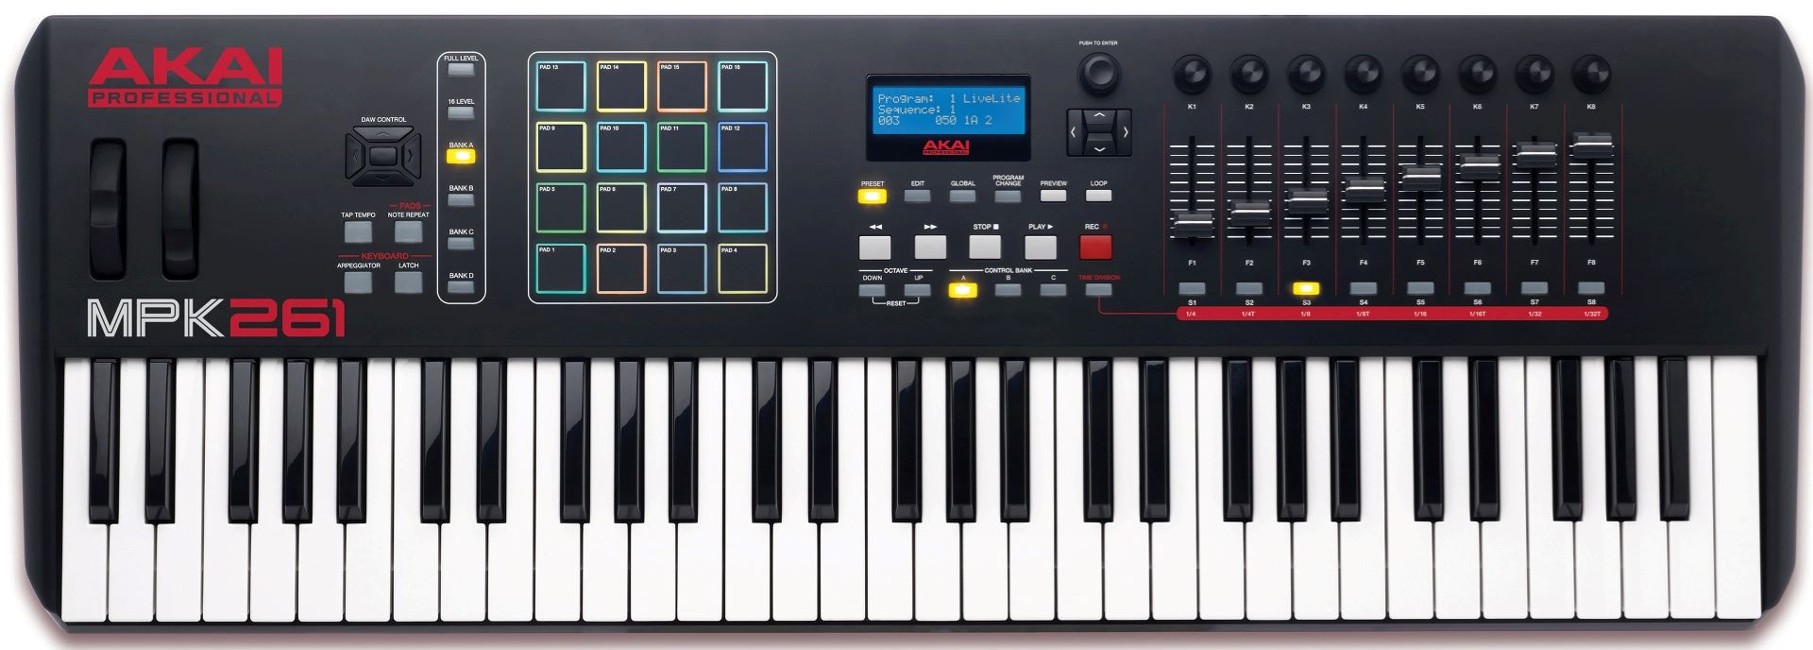 Akai - MPK261 - USB MIDI Keyboard